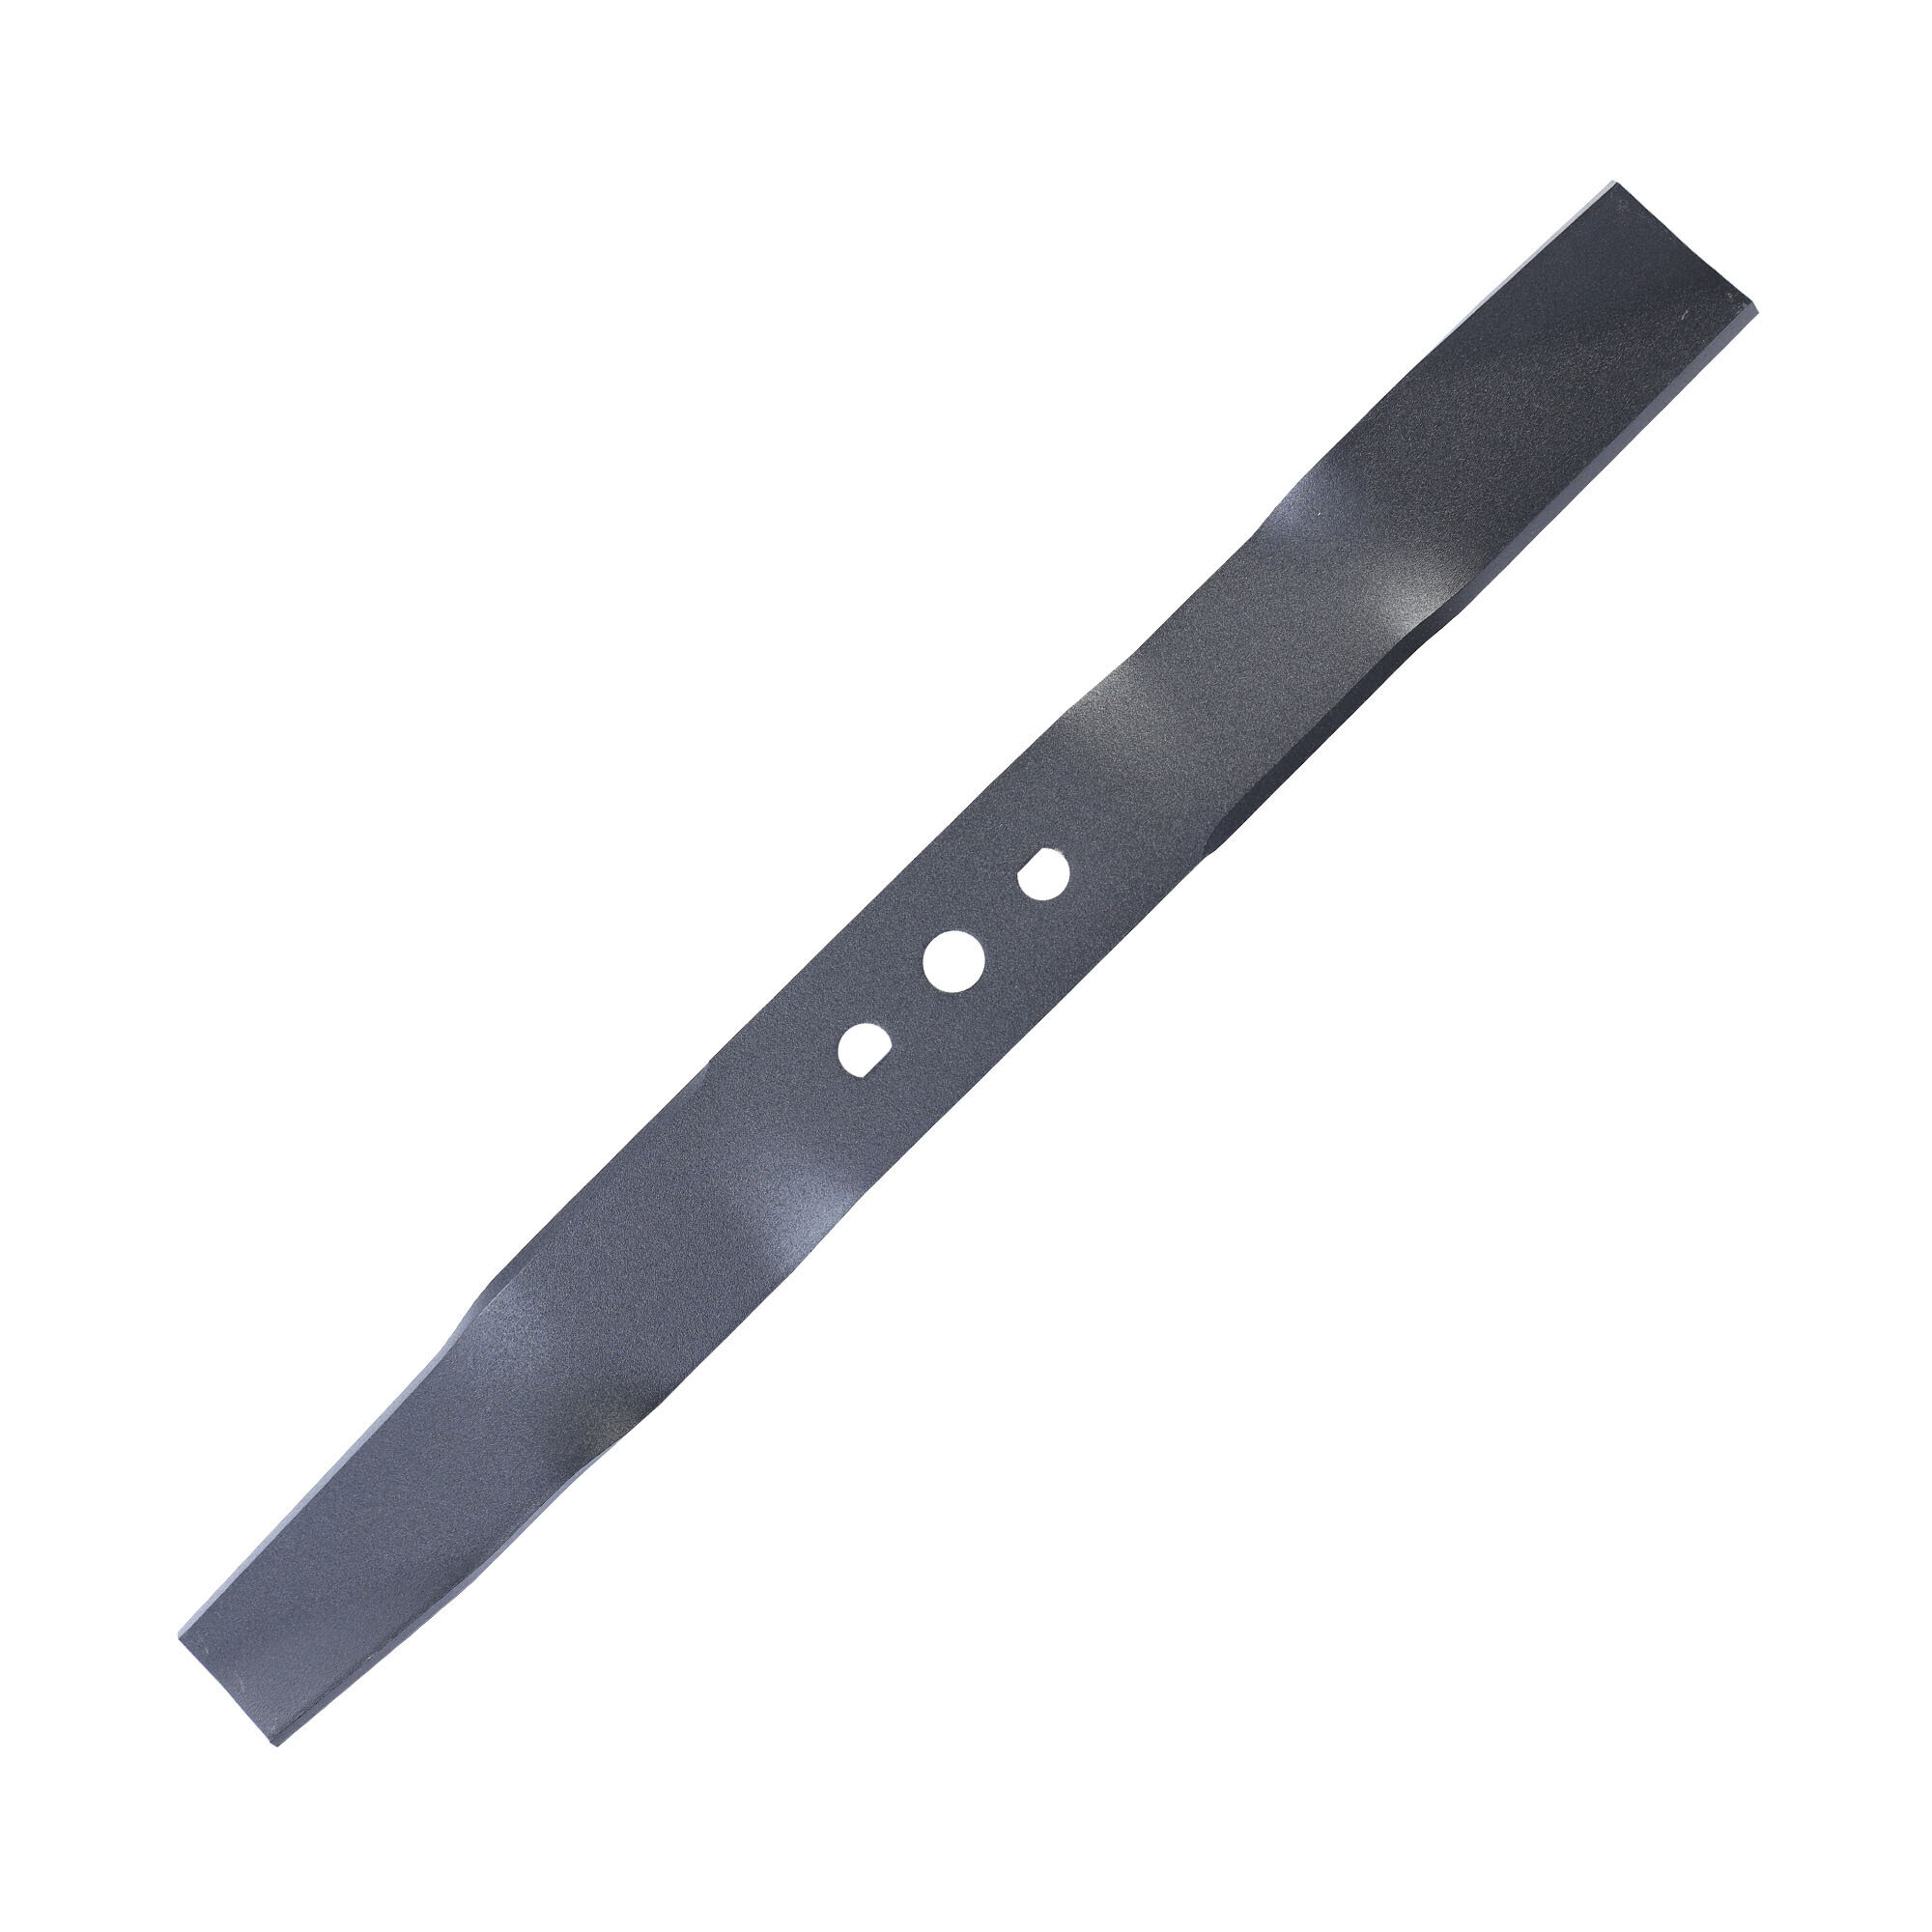 Нож для газонокосилки PATRIOT MBS 407 для газонокосилок PT41LM/PT42LS/PT410/PT400/PT42BS длина ножа 407мм посадочное отверстие 182х122мм